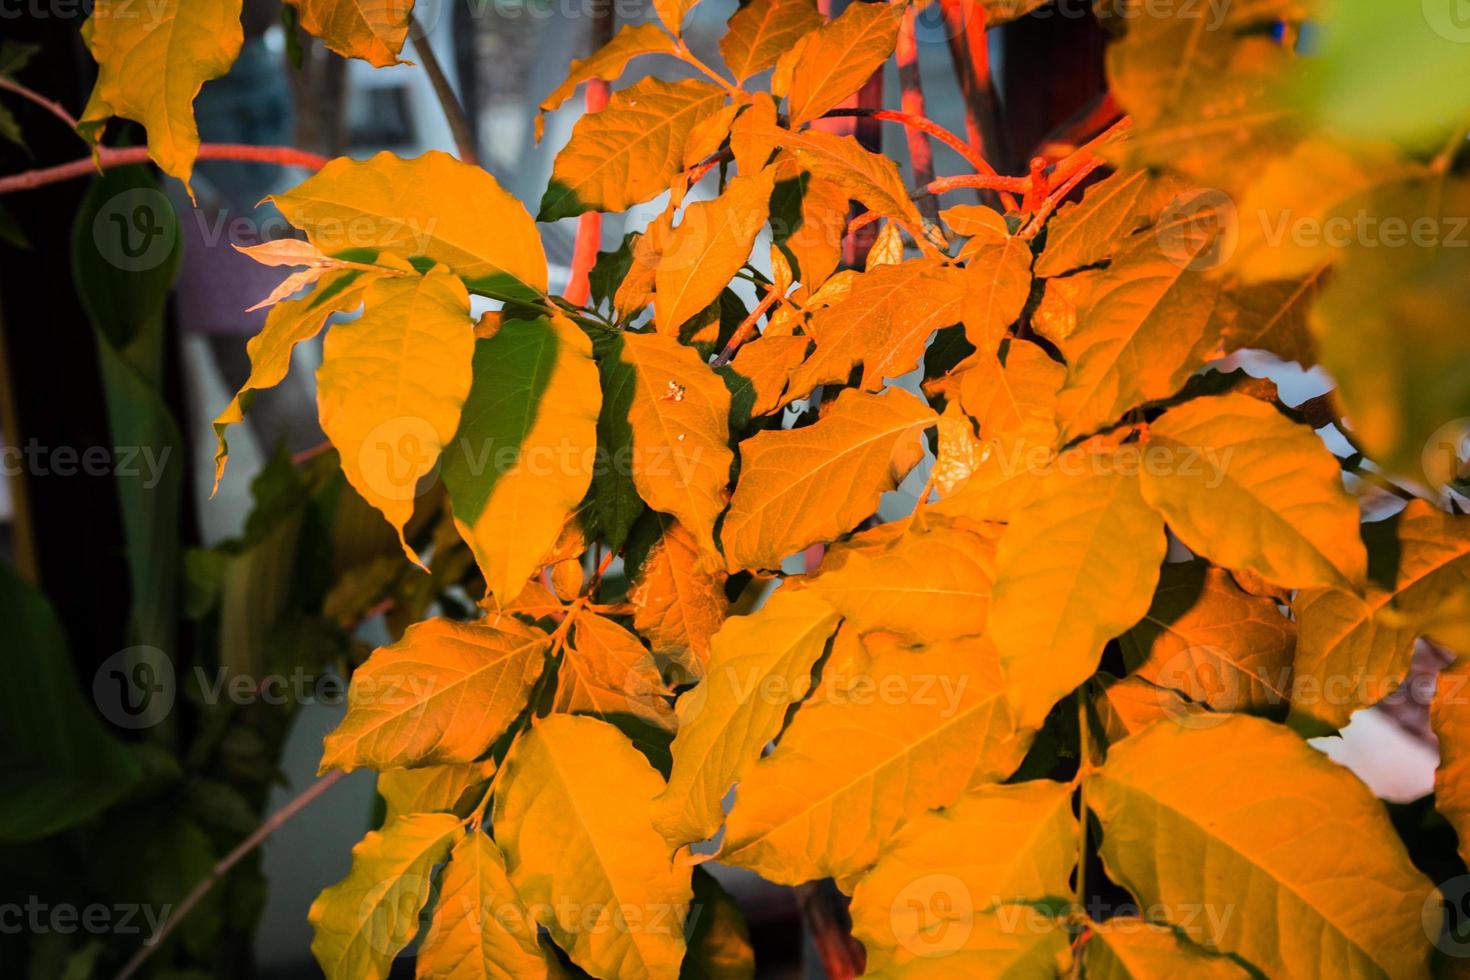 foglie illuminate da luce led di colore arancione foto